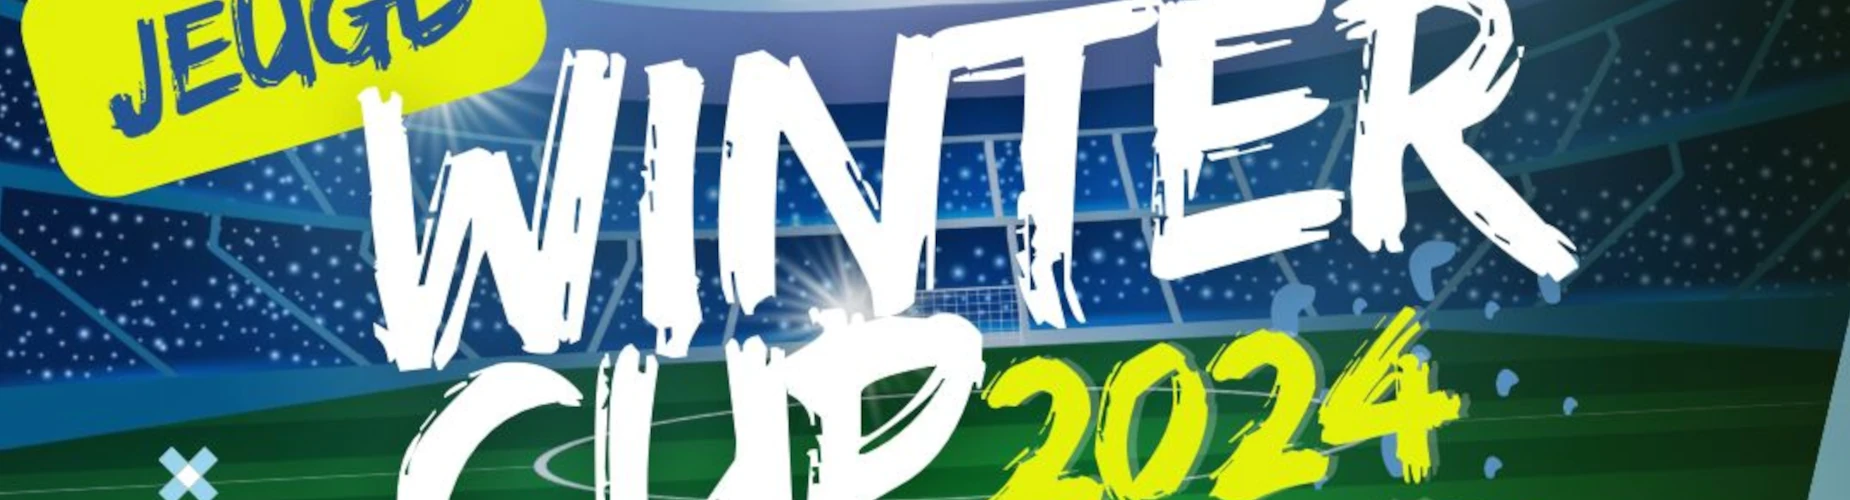 Banner - Jeugd Wintercup 2024 - ASWH - Hendrik-Ido-Ambacht